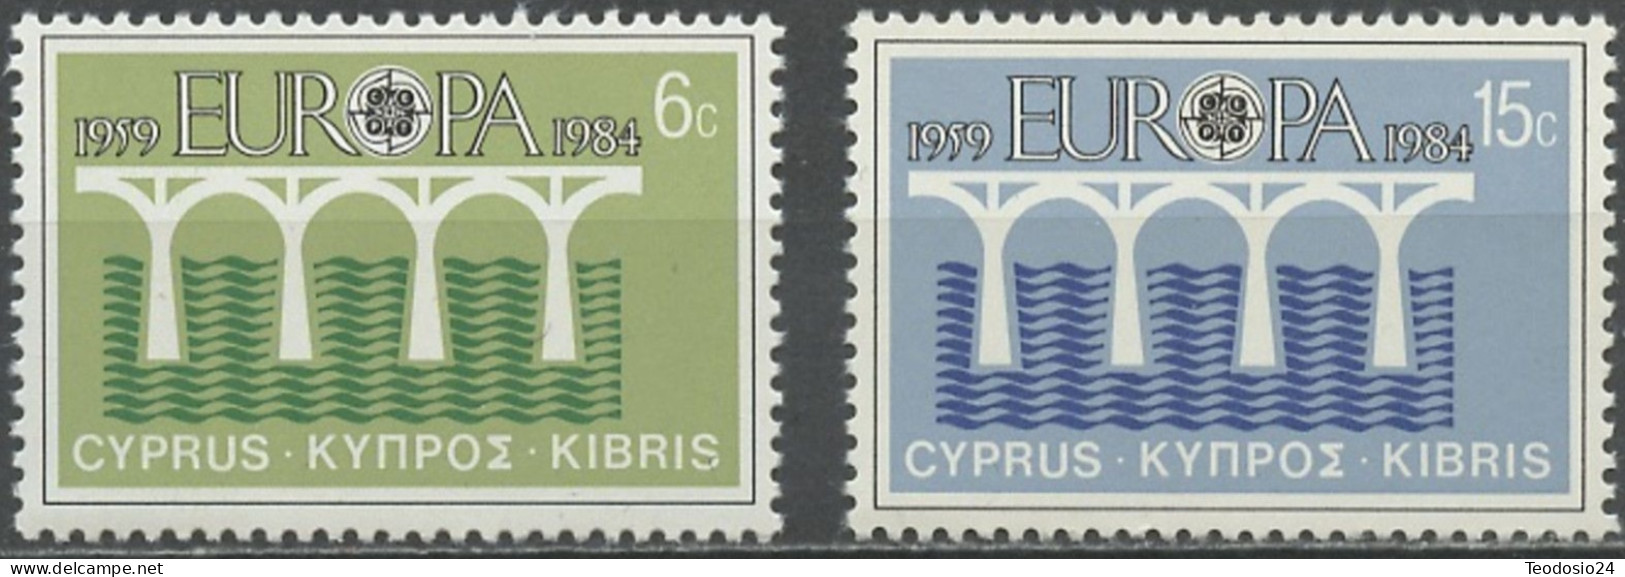 Chypre 1984 Y&T 606 à 607 - Mi 611 à 612 ** - EUROPA - Ongebruikt